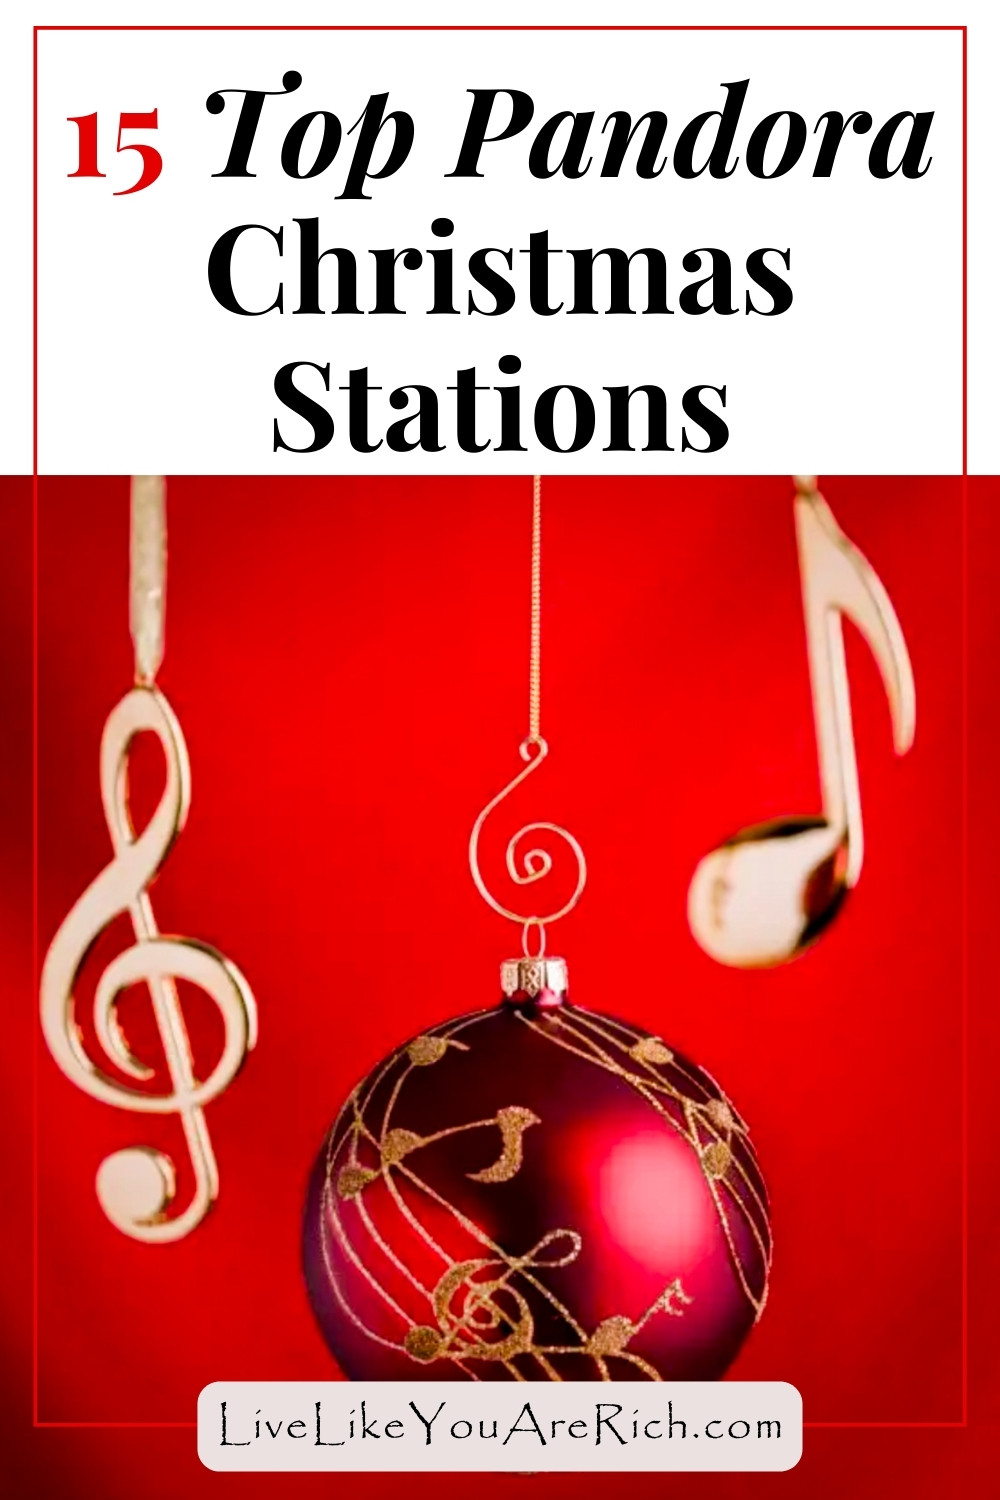 15 Top Pandora Christmas Stations